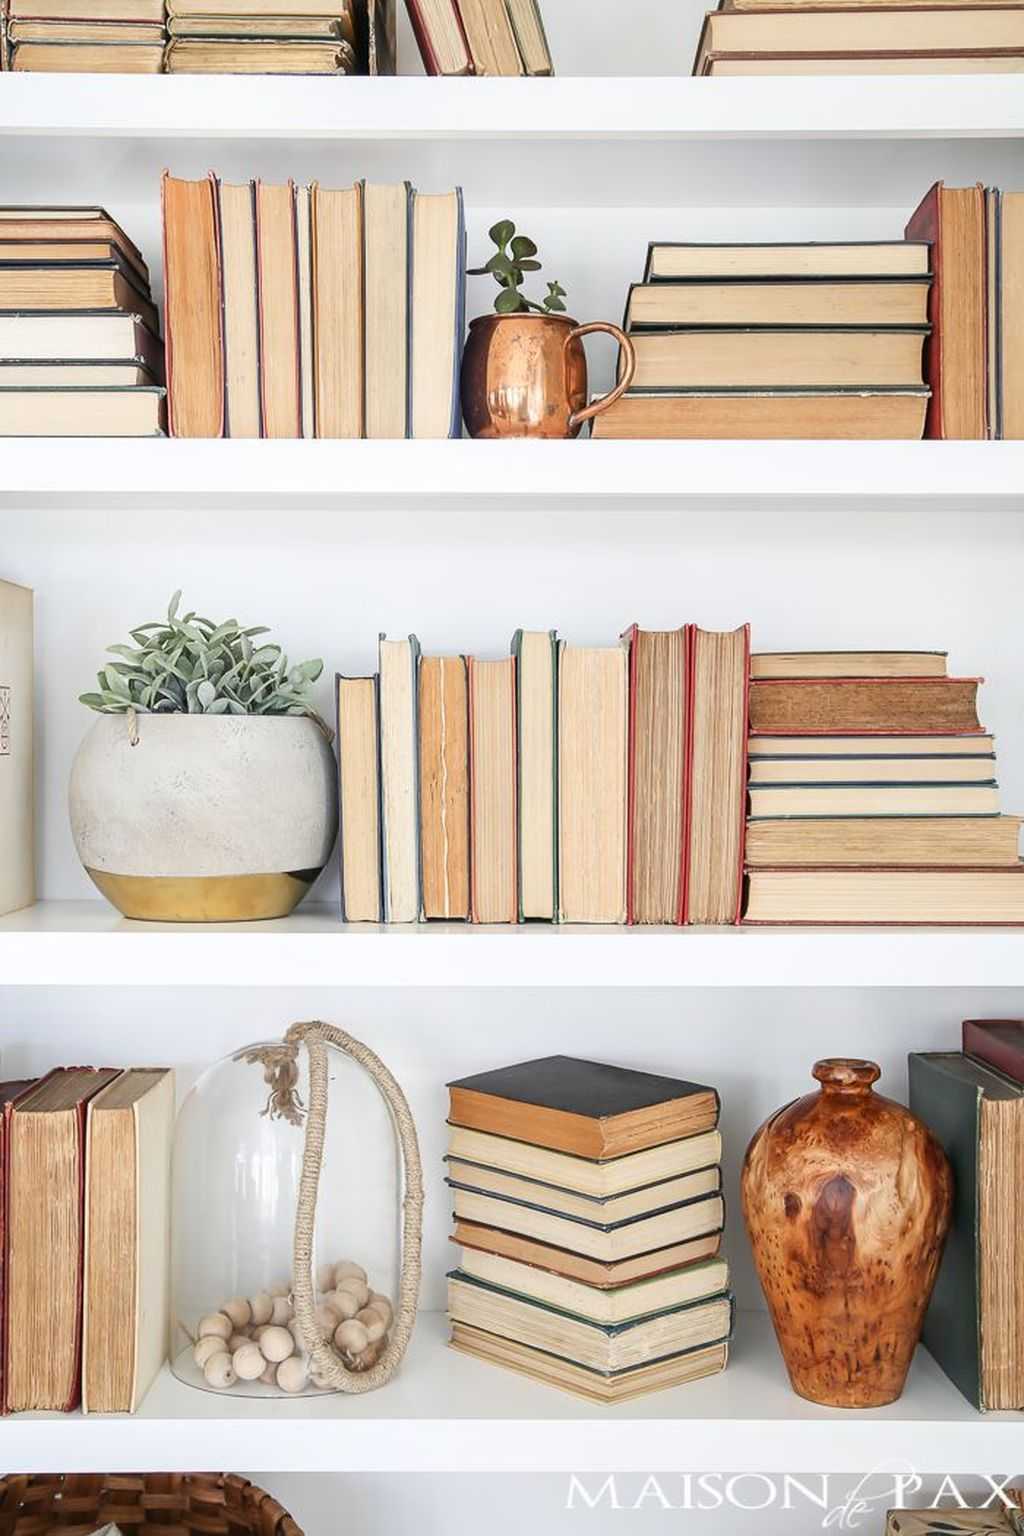 Где хранить книги в маленькой квартире: 6 интересных примеров от квартблога